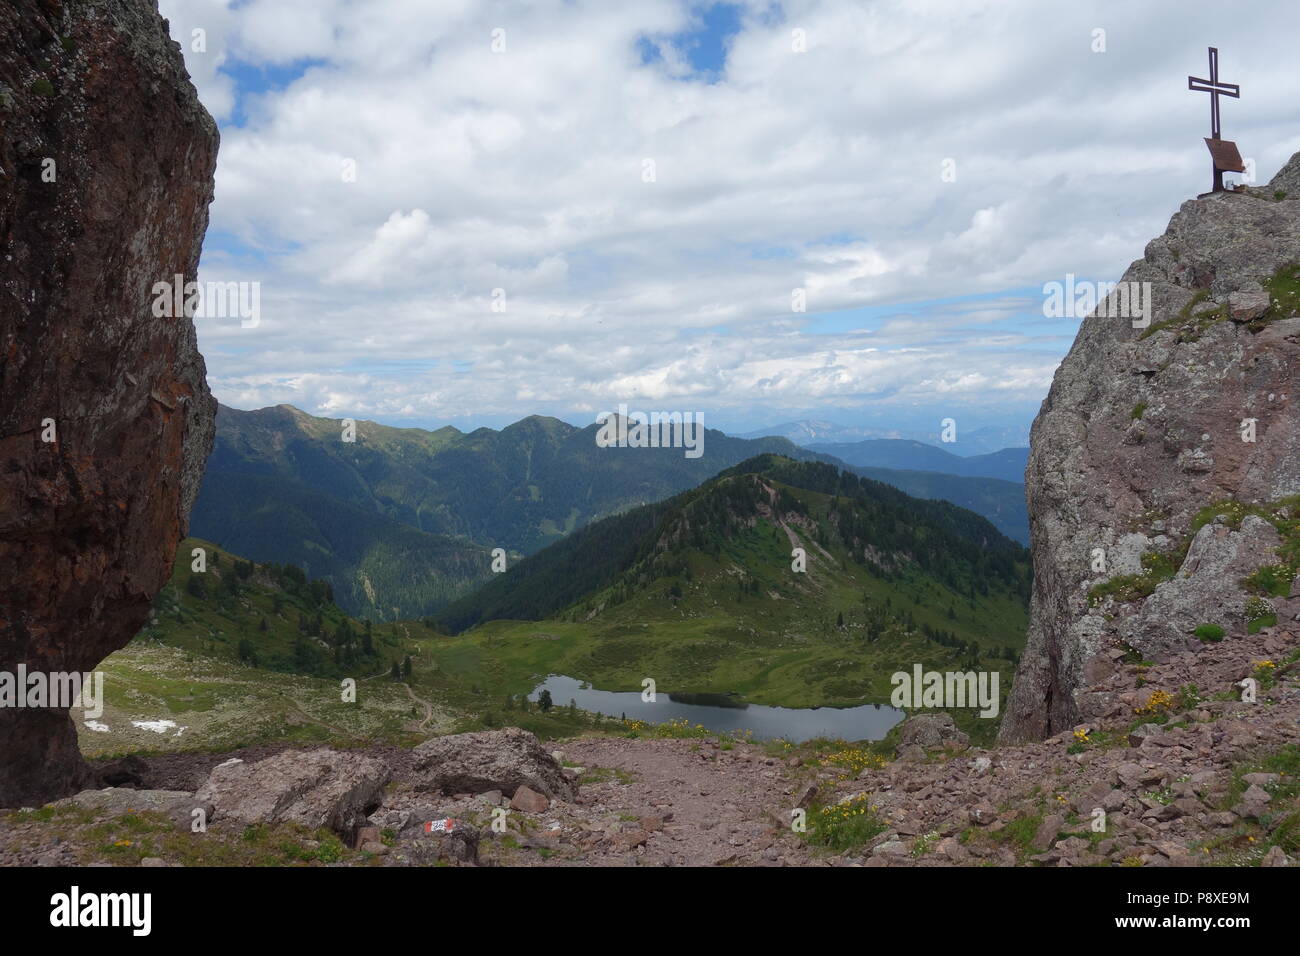 La catena montuosa del Lagorai la gamma della montagna nelle Alpi orientali in Trentino, Italia Foto Stock